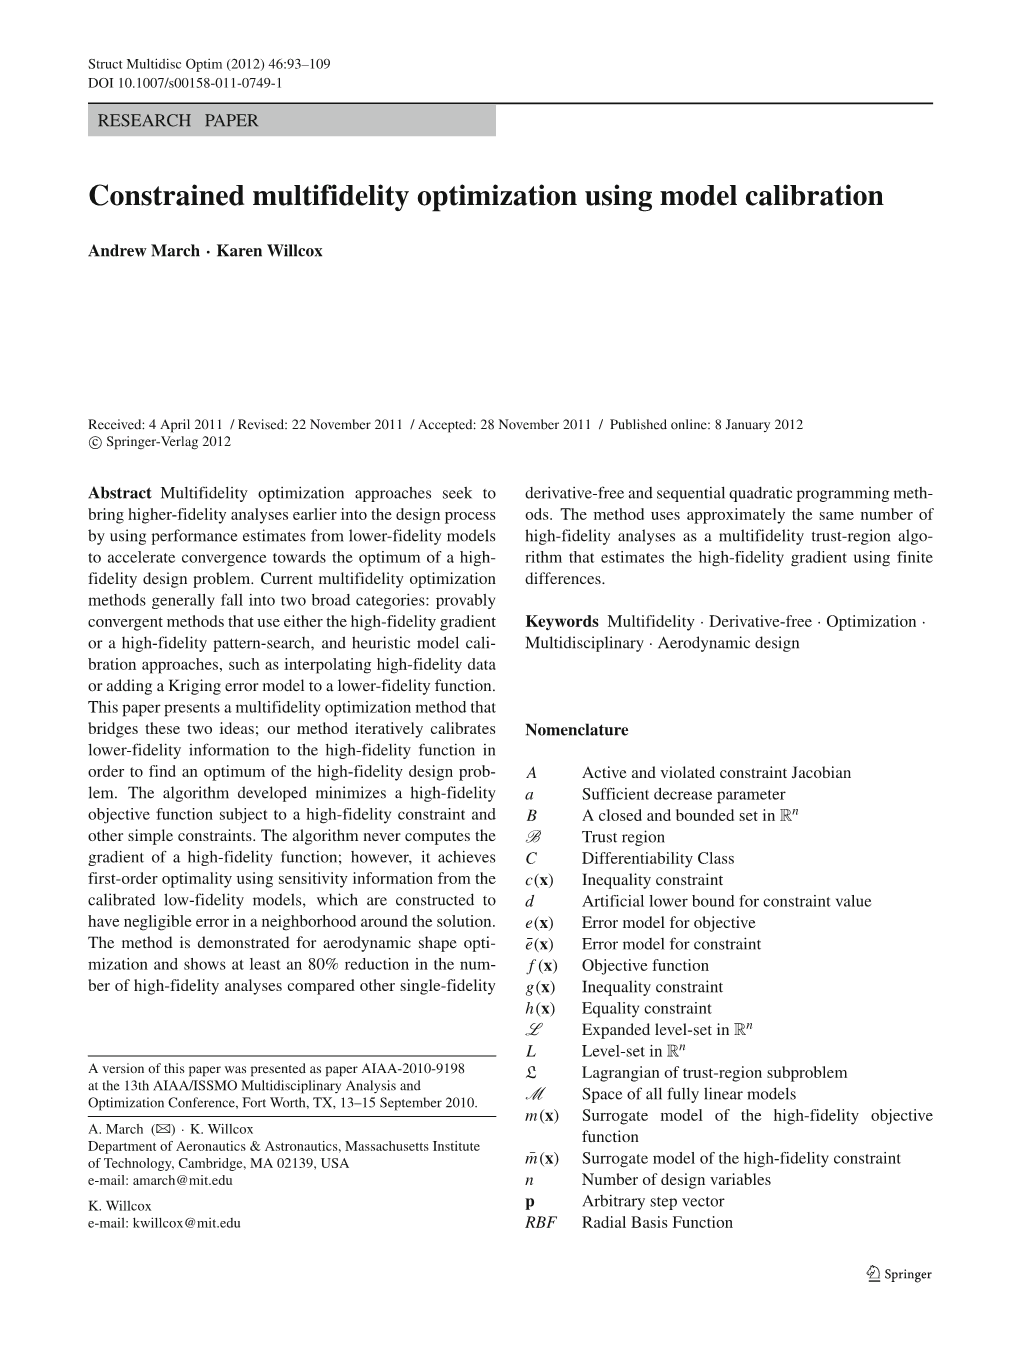 Constrained Multifidelity Optimization Using Model Calibration